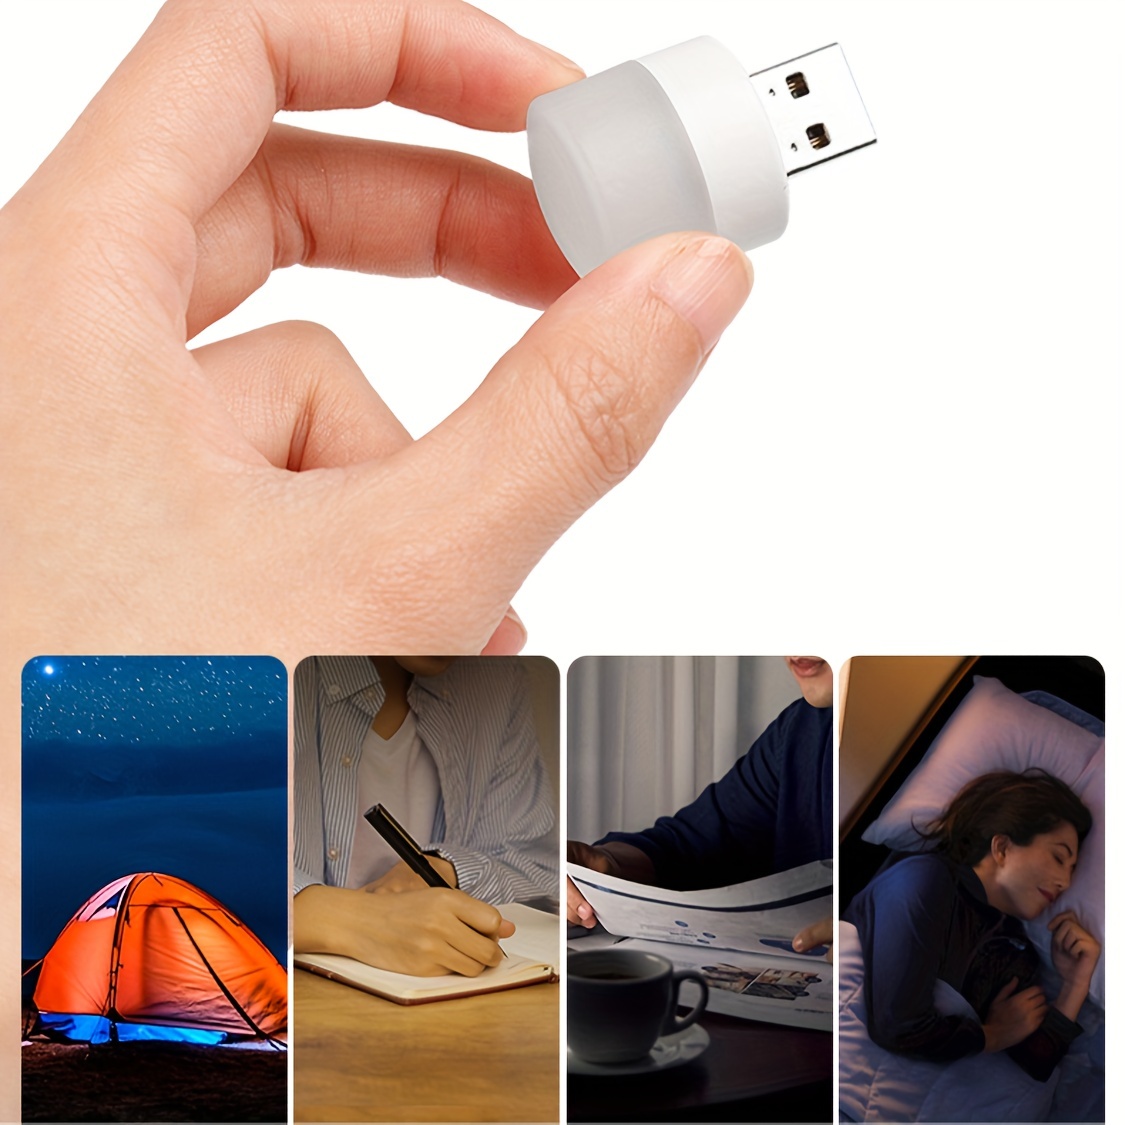 Portable LED light - None 